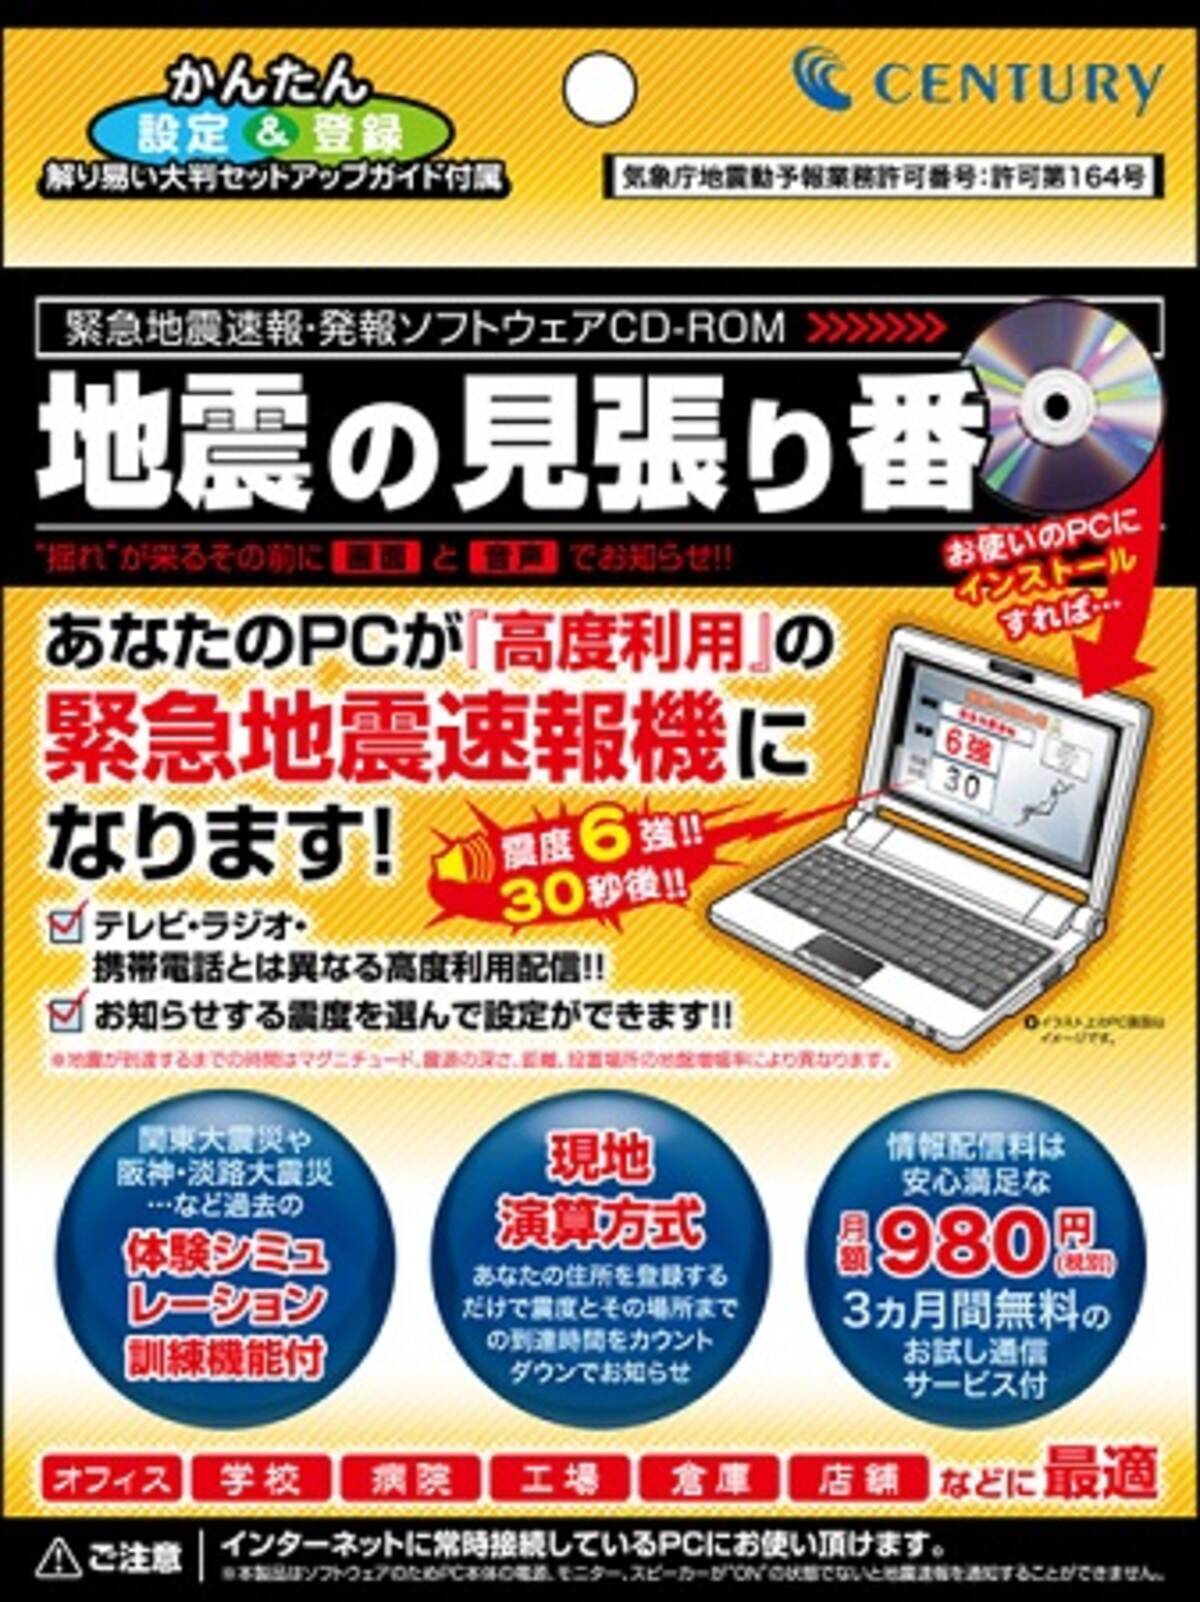 業界初 パソコンが緊急地震速報機になるソフトウェア 地震の見張り番 発売へ 2010年9月2日 エキサイトニュース